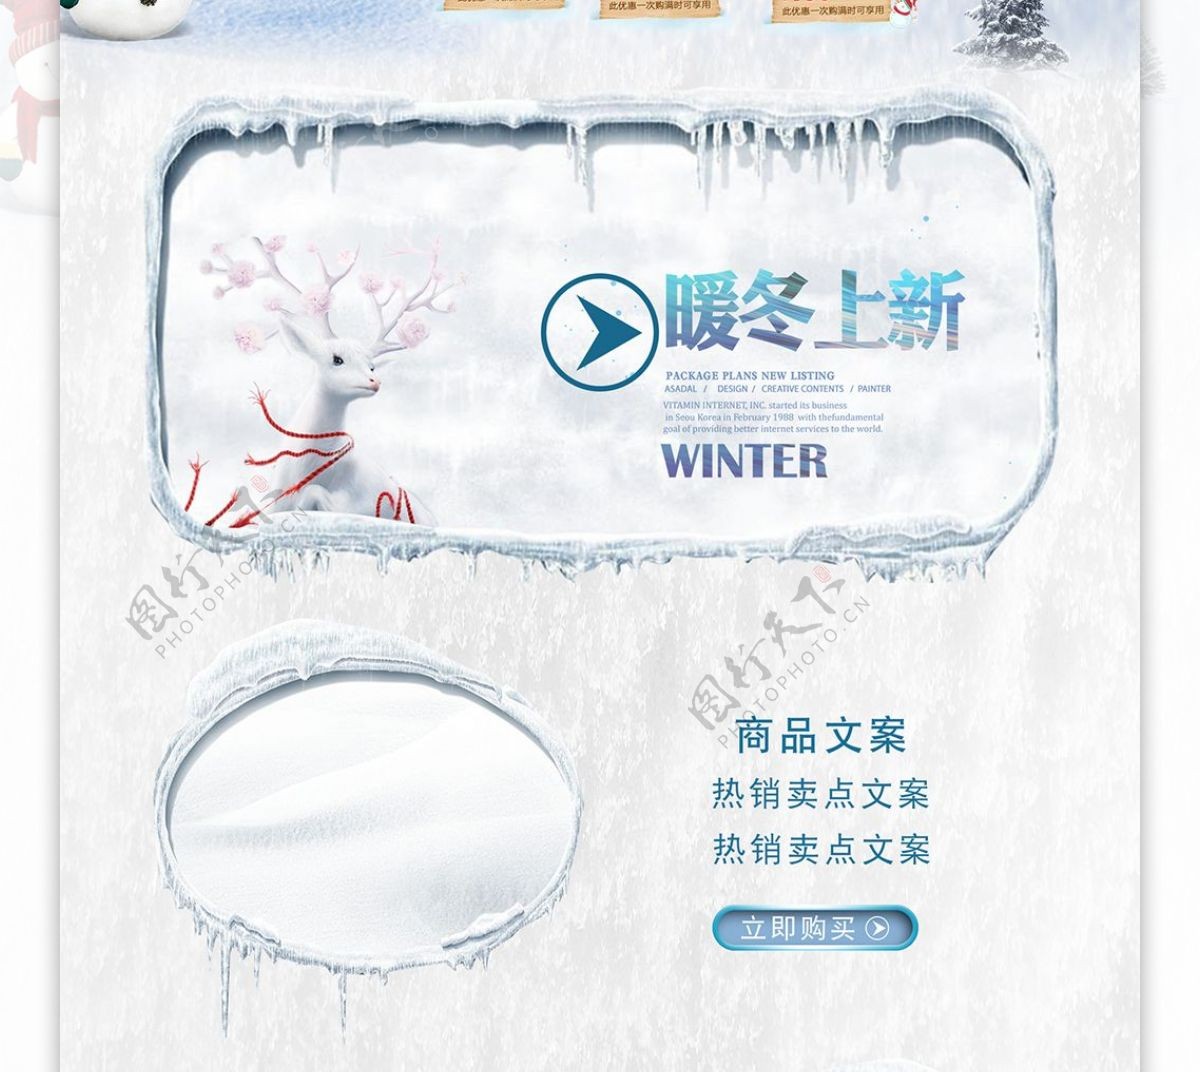 冬季旅游优惠活动促销pc端首页模板